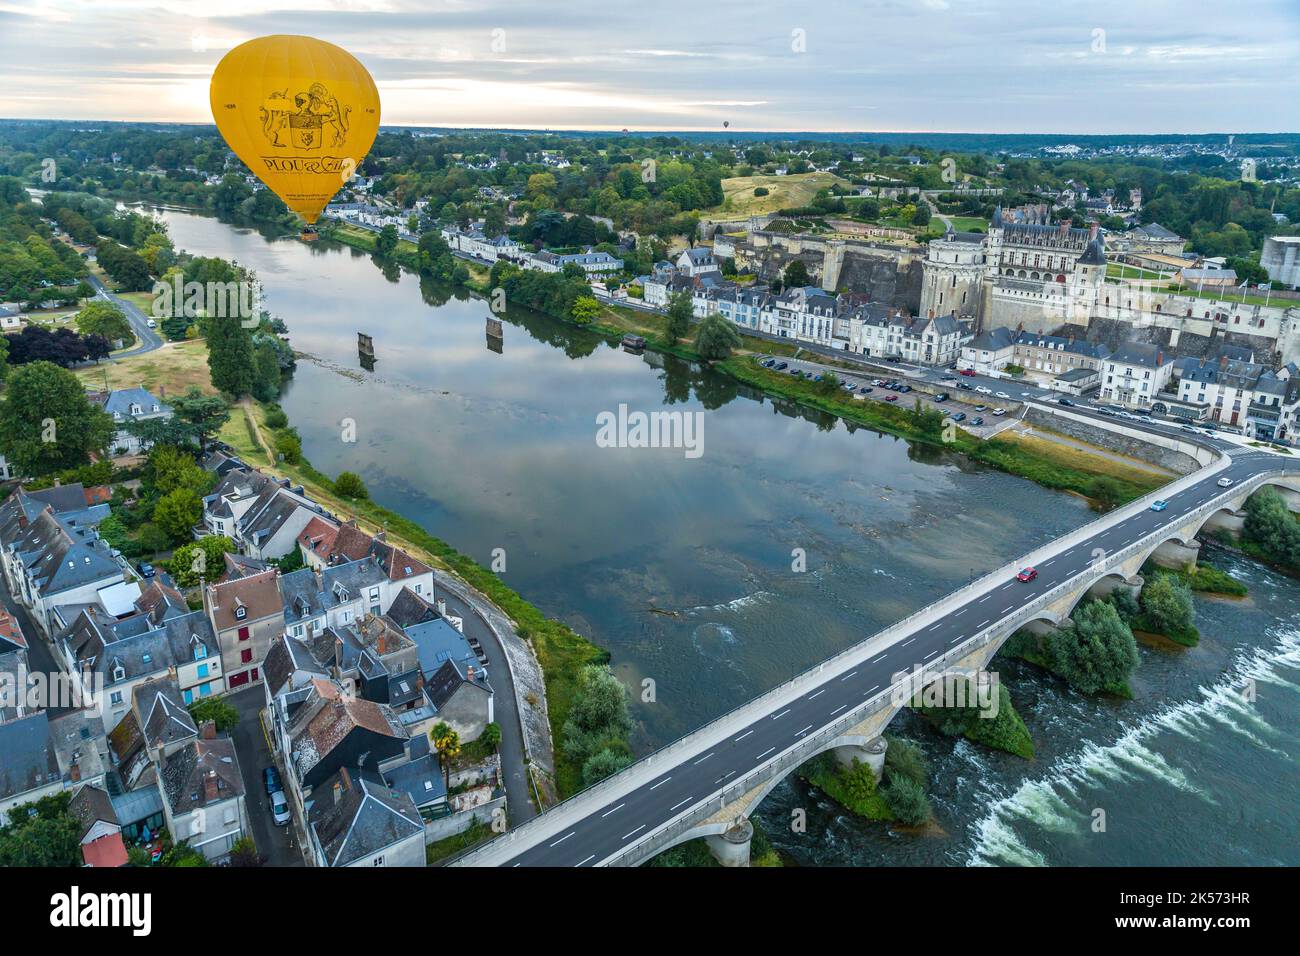 France, Indre et Loire, Amboise, en vol depuis un ballon à air chaud avec l'opérateur Balloon Revolution (vue aérienne) Banque D'Images